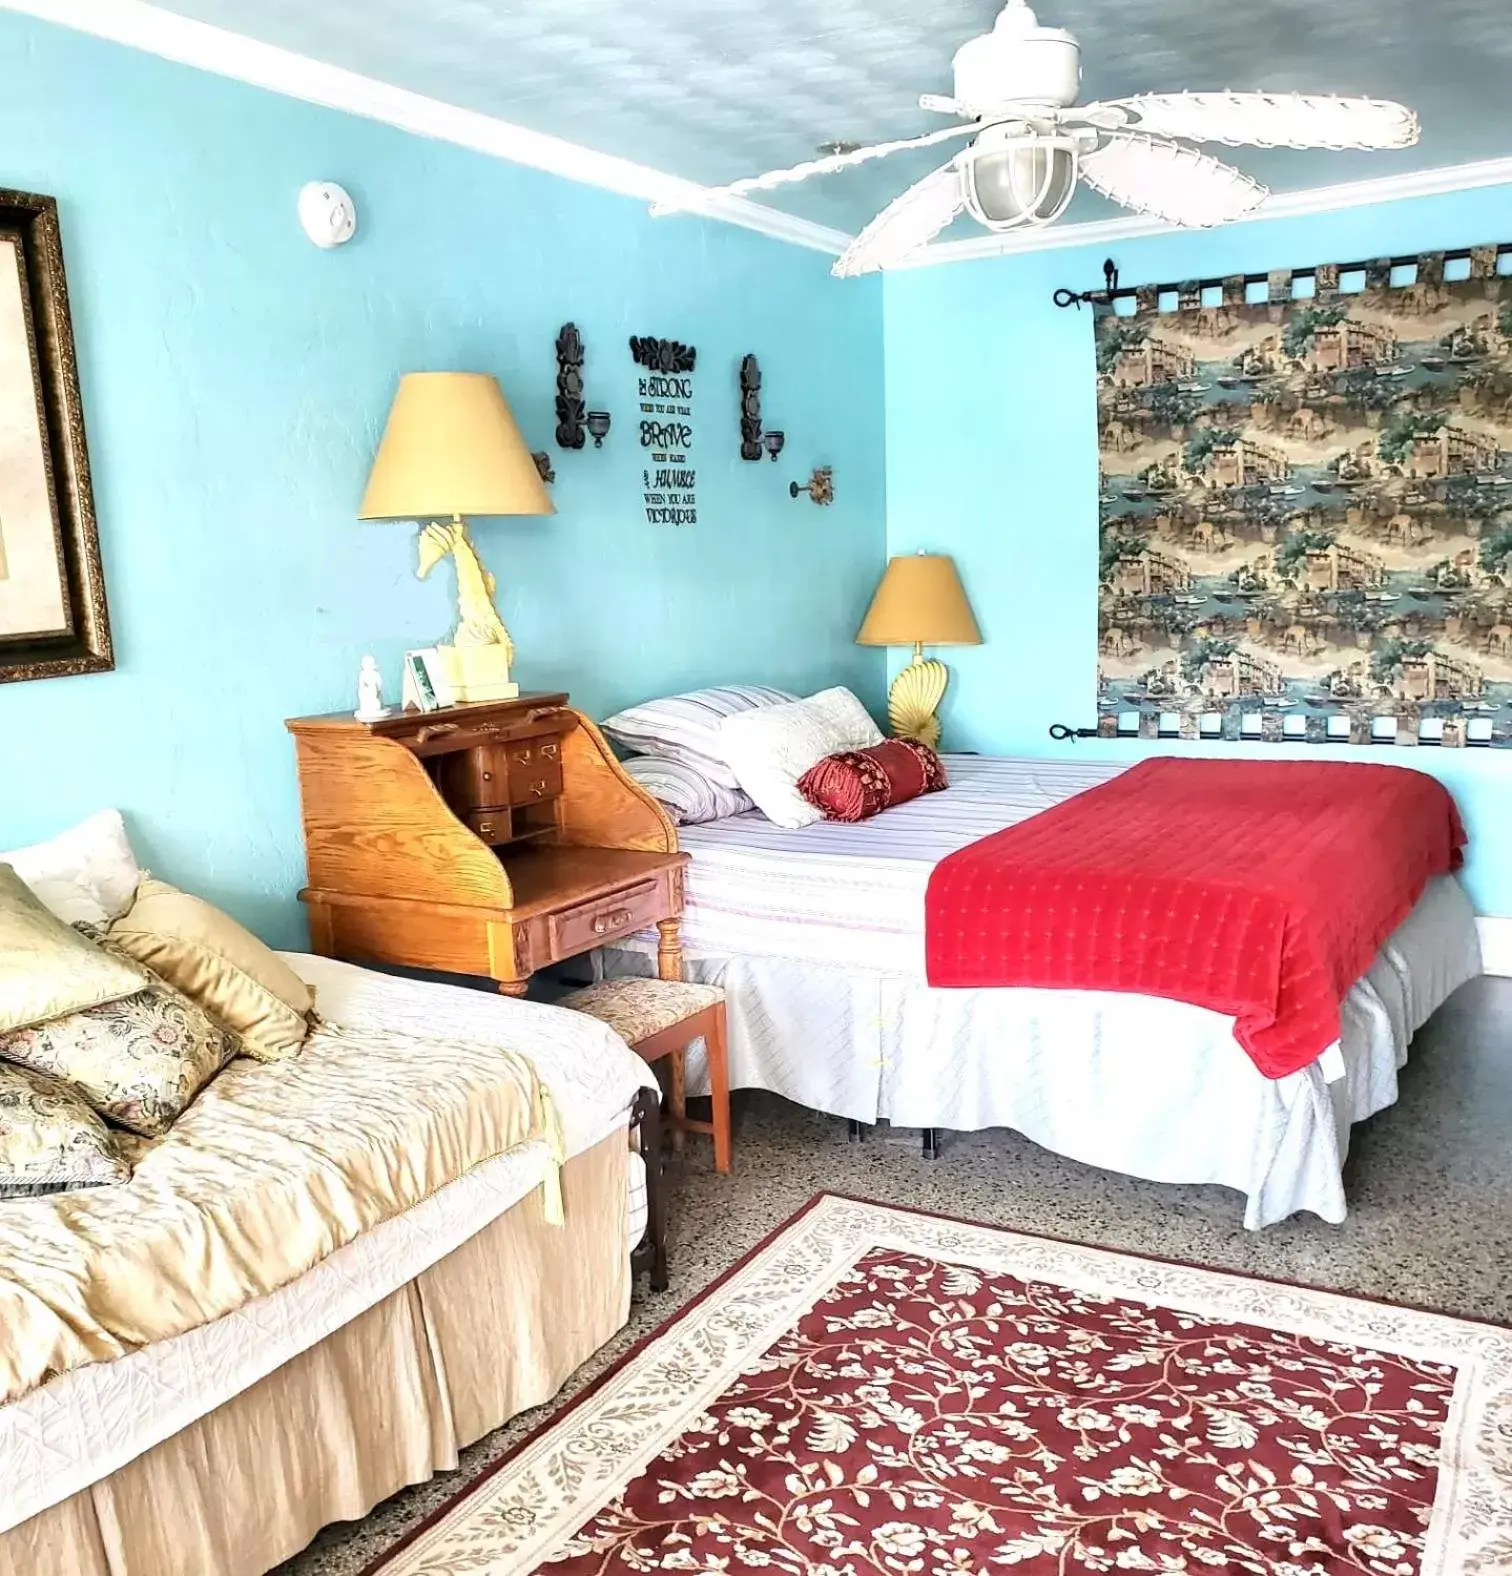 Bedroom, Bed in Shamrock Cove Inn